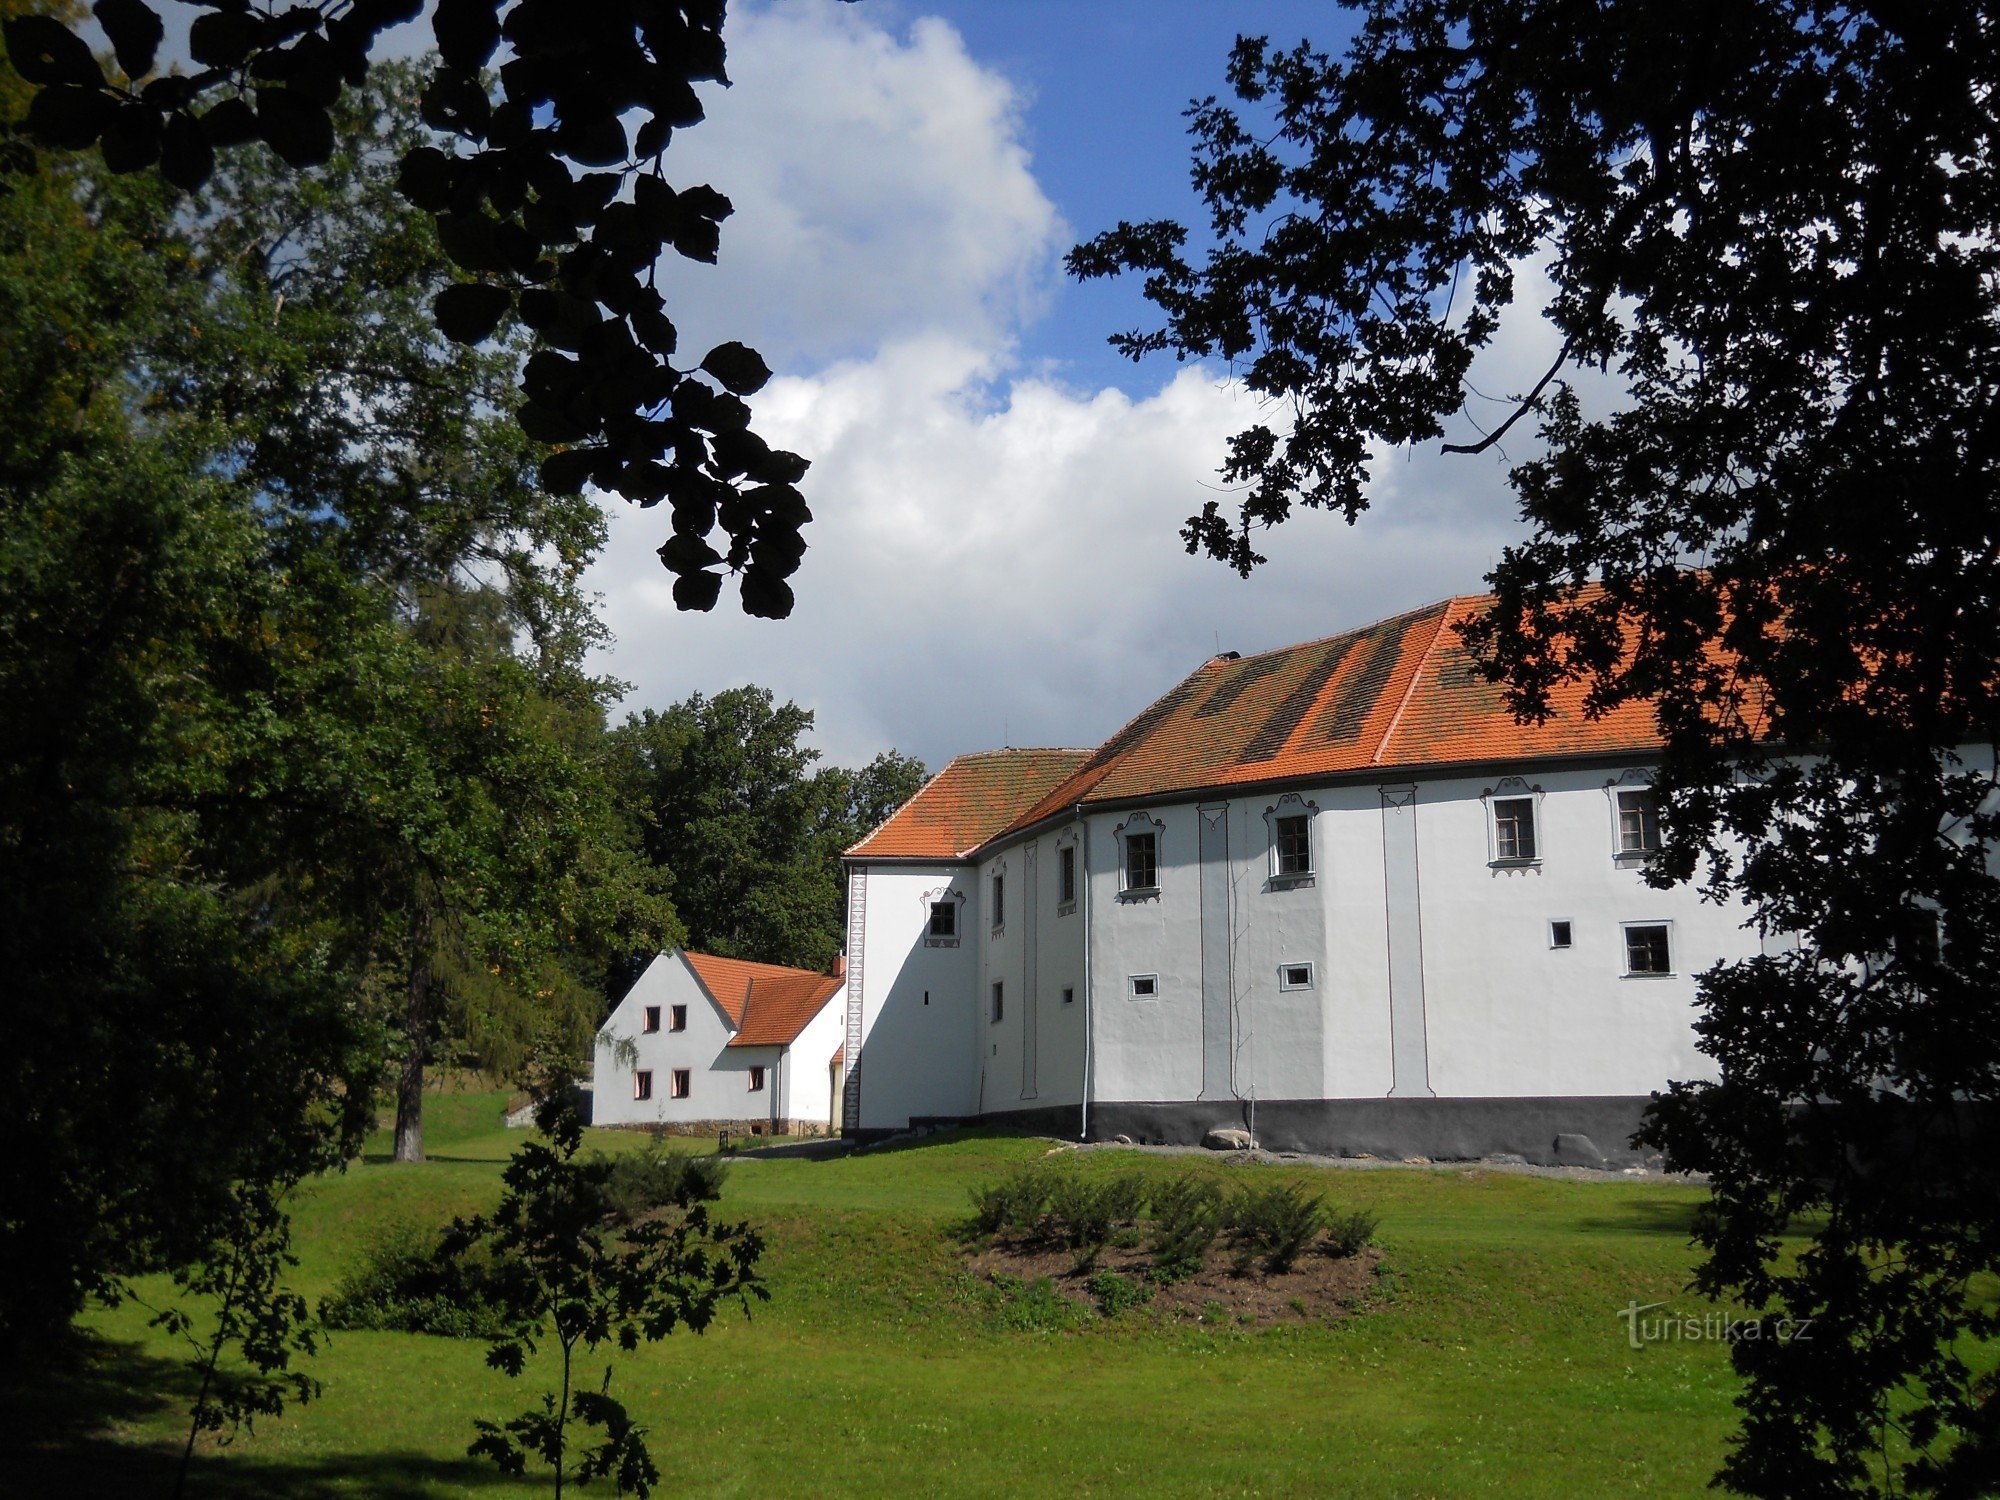 Chanovice slott